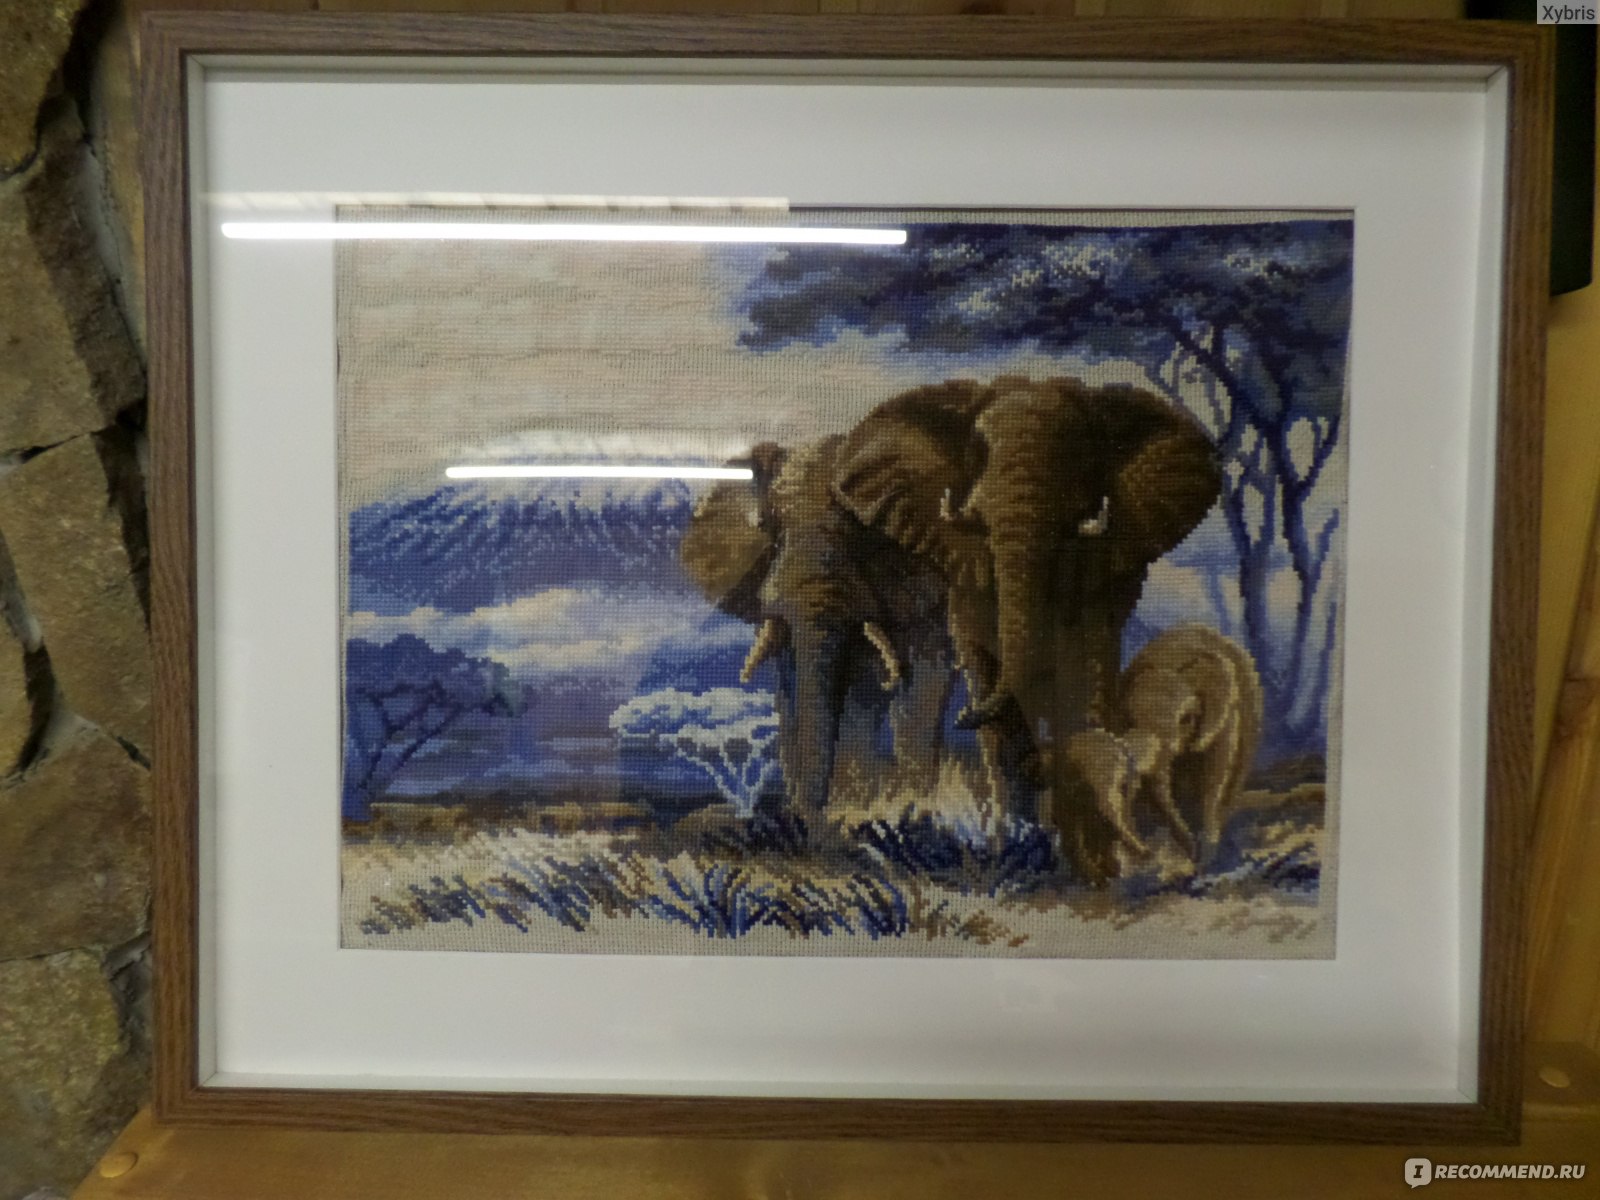 Описание товара Картина из ниток слон Josephin 409003